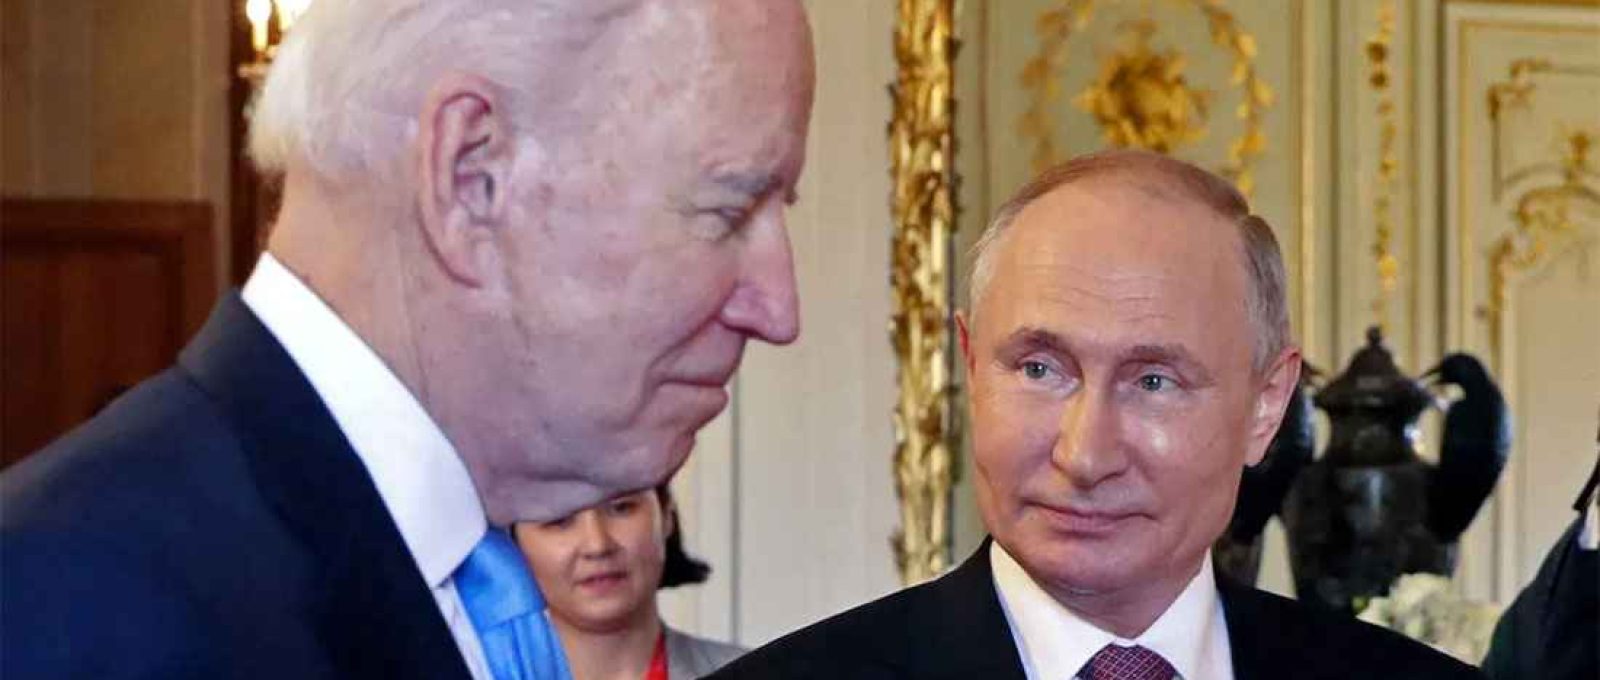 O presidente dos EUA, Joe Biden, ameaçou impor pesadas consequências econômicas se Vladimir Putin ordenar uma invasão da Ucrânia. Mas essa é a história completa? (Mikhail Metzel/AFP/Sputnik).